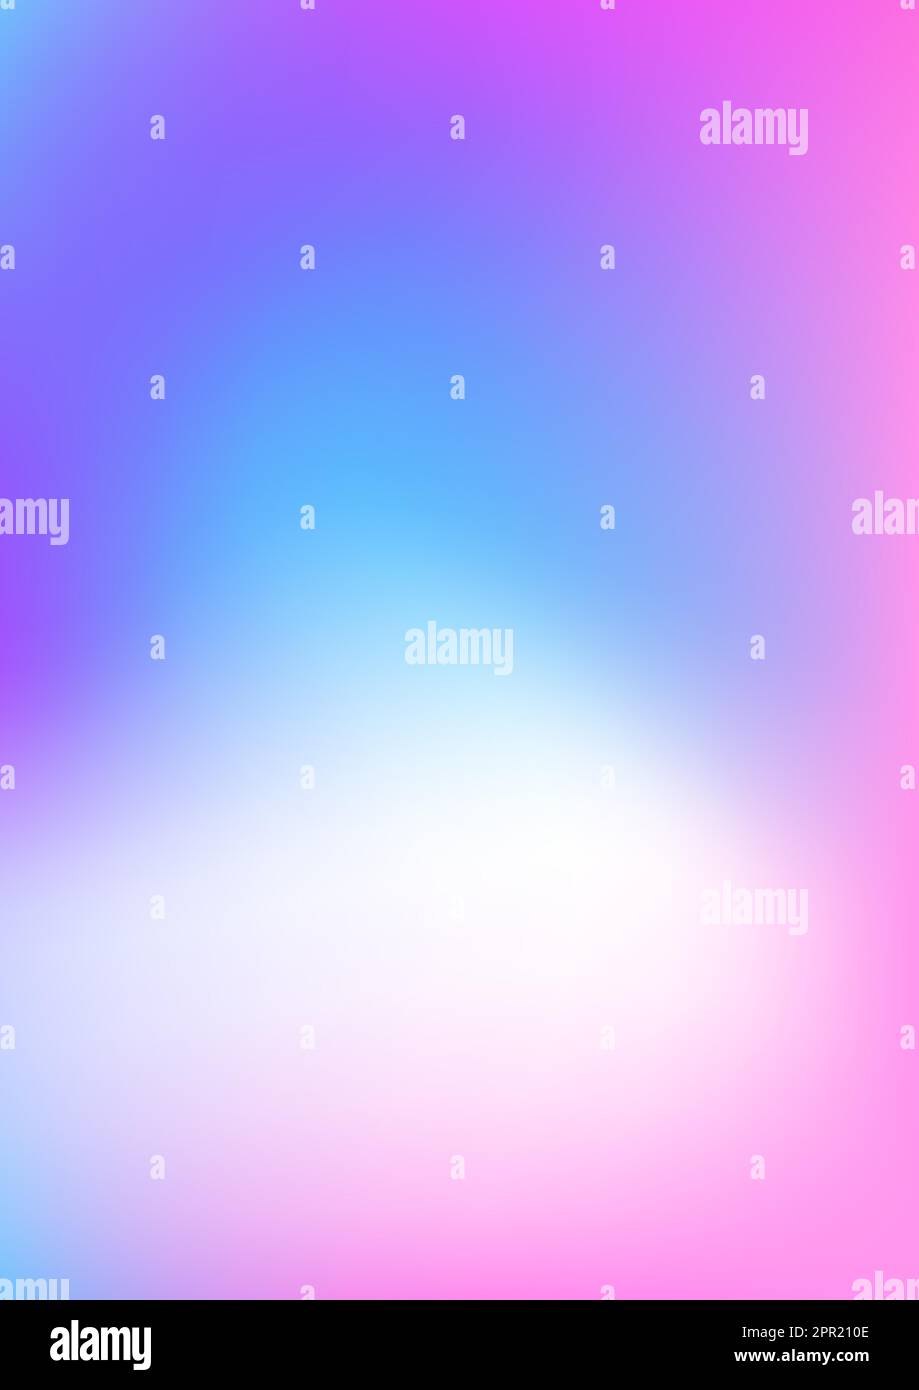 Dégradé bleu rose blanc arrière-plan. Rectangle vertical. Affiche, couverture pour ordinateur portable. Illustration vectorielle Illustration de Vecteur